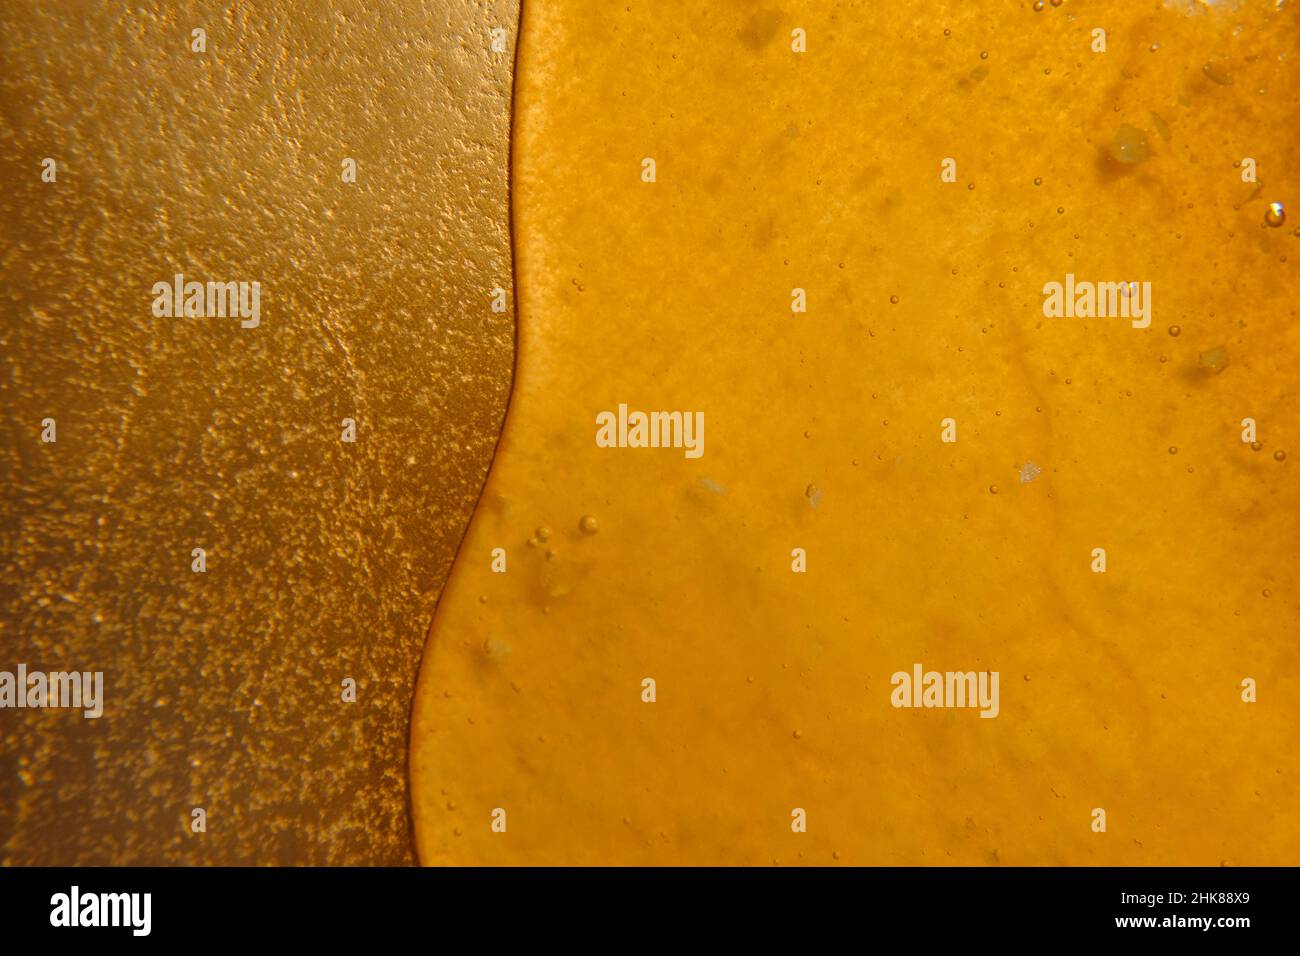 Miele gocciola su un vassoio d'oro naturale apicoltura products.Texture di miele.Liquid miele. Foto Stock